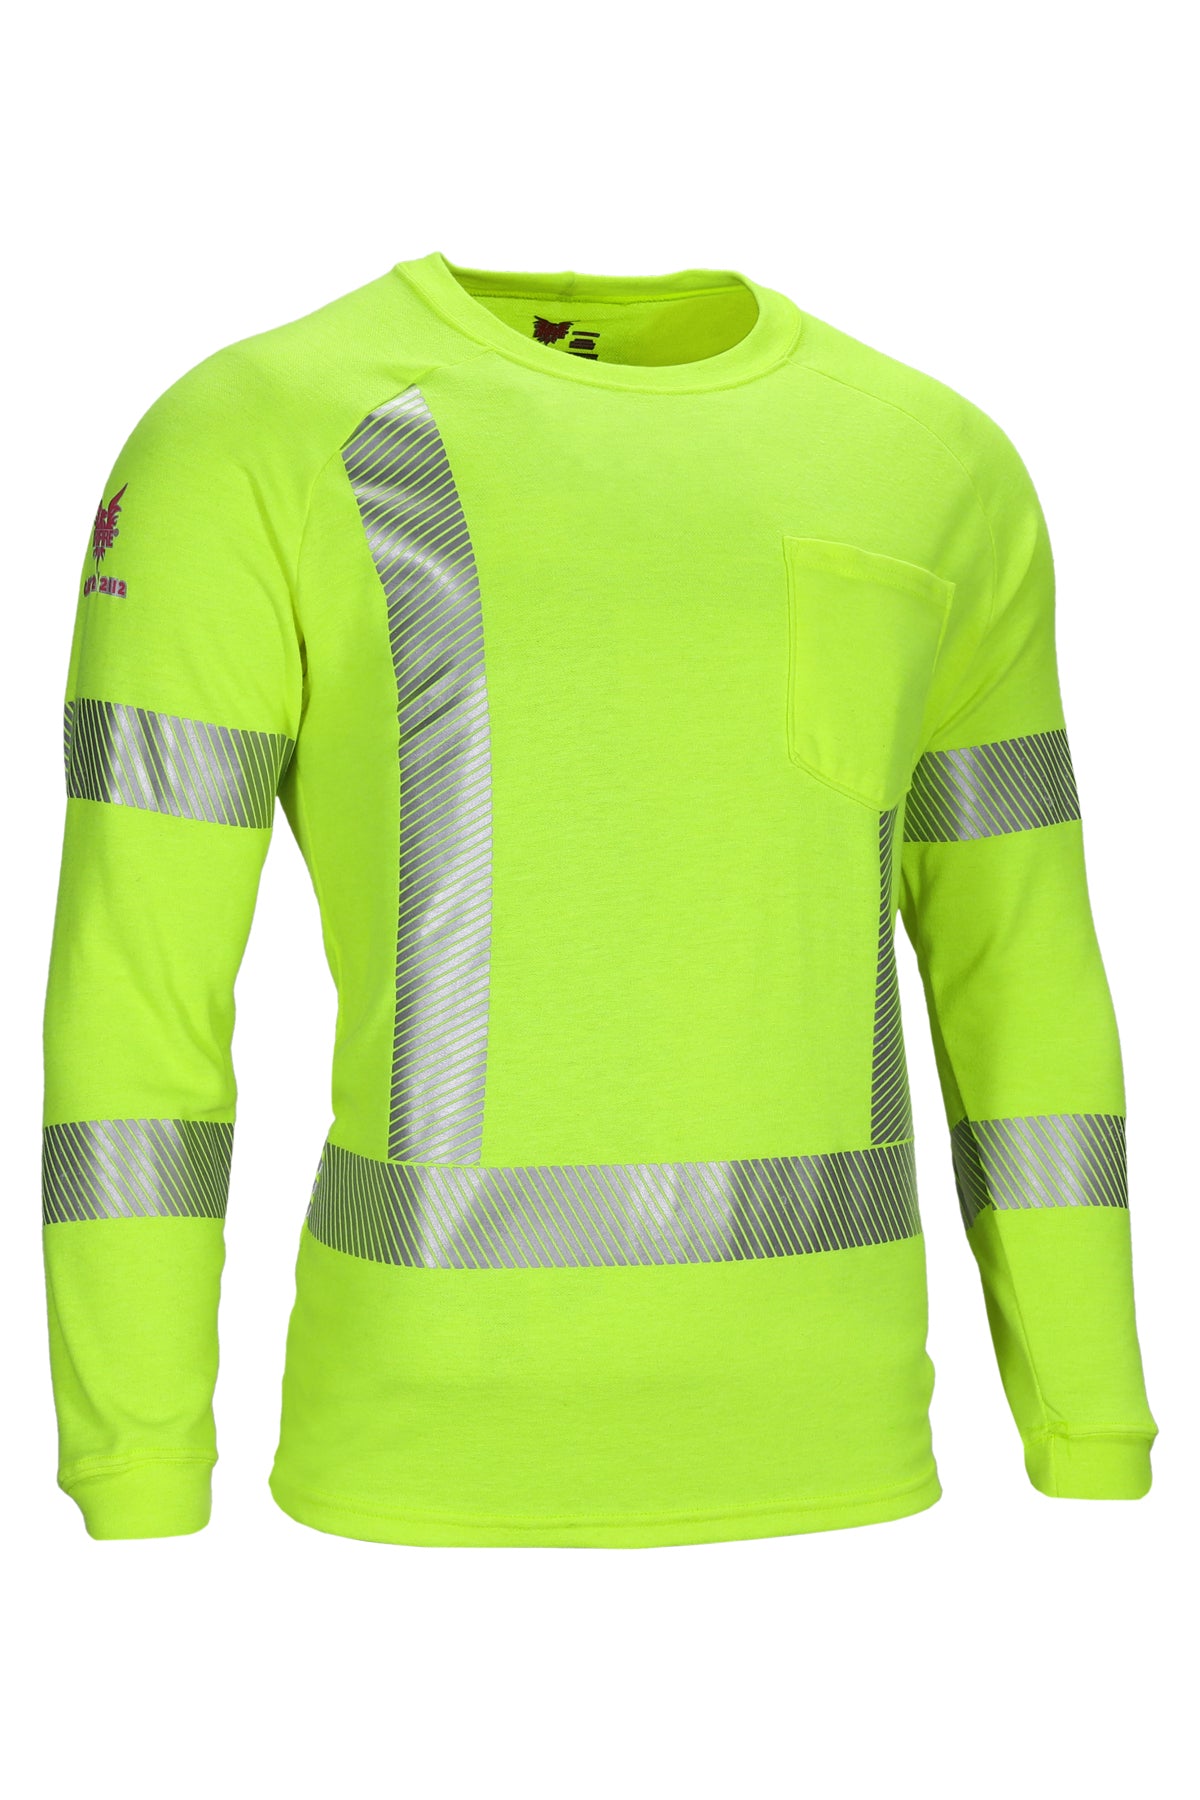 National Safety Apparel Drifire FR Helix Long Sleeve Hi Vis T-Shirt, Class 3, 12 cal/cm²